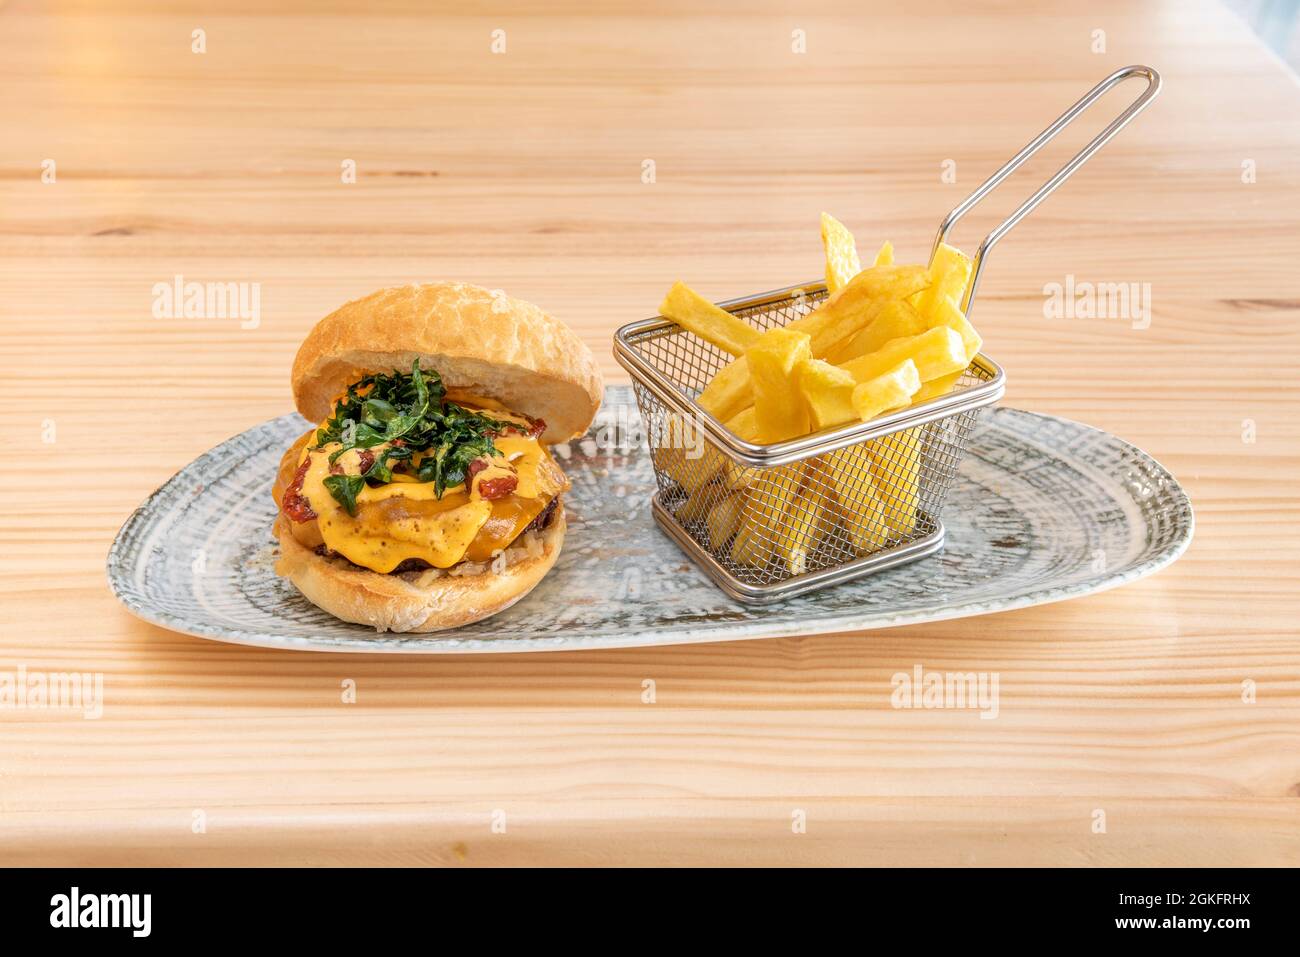 Spektakulärer Rindfleischburger mit viel Käse, gebratener Rucola und italienischer dehydrierter Tomate mit einer Portion Pommes als Beilage auf einem Holztisch Stockfoto